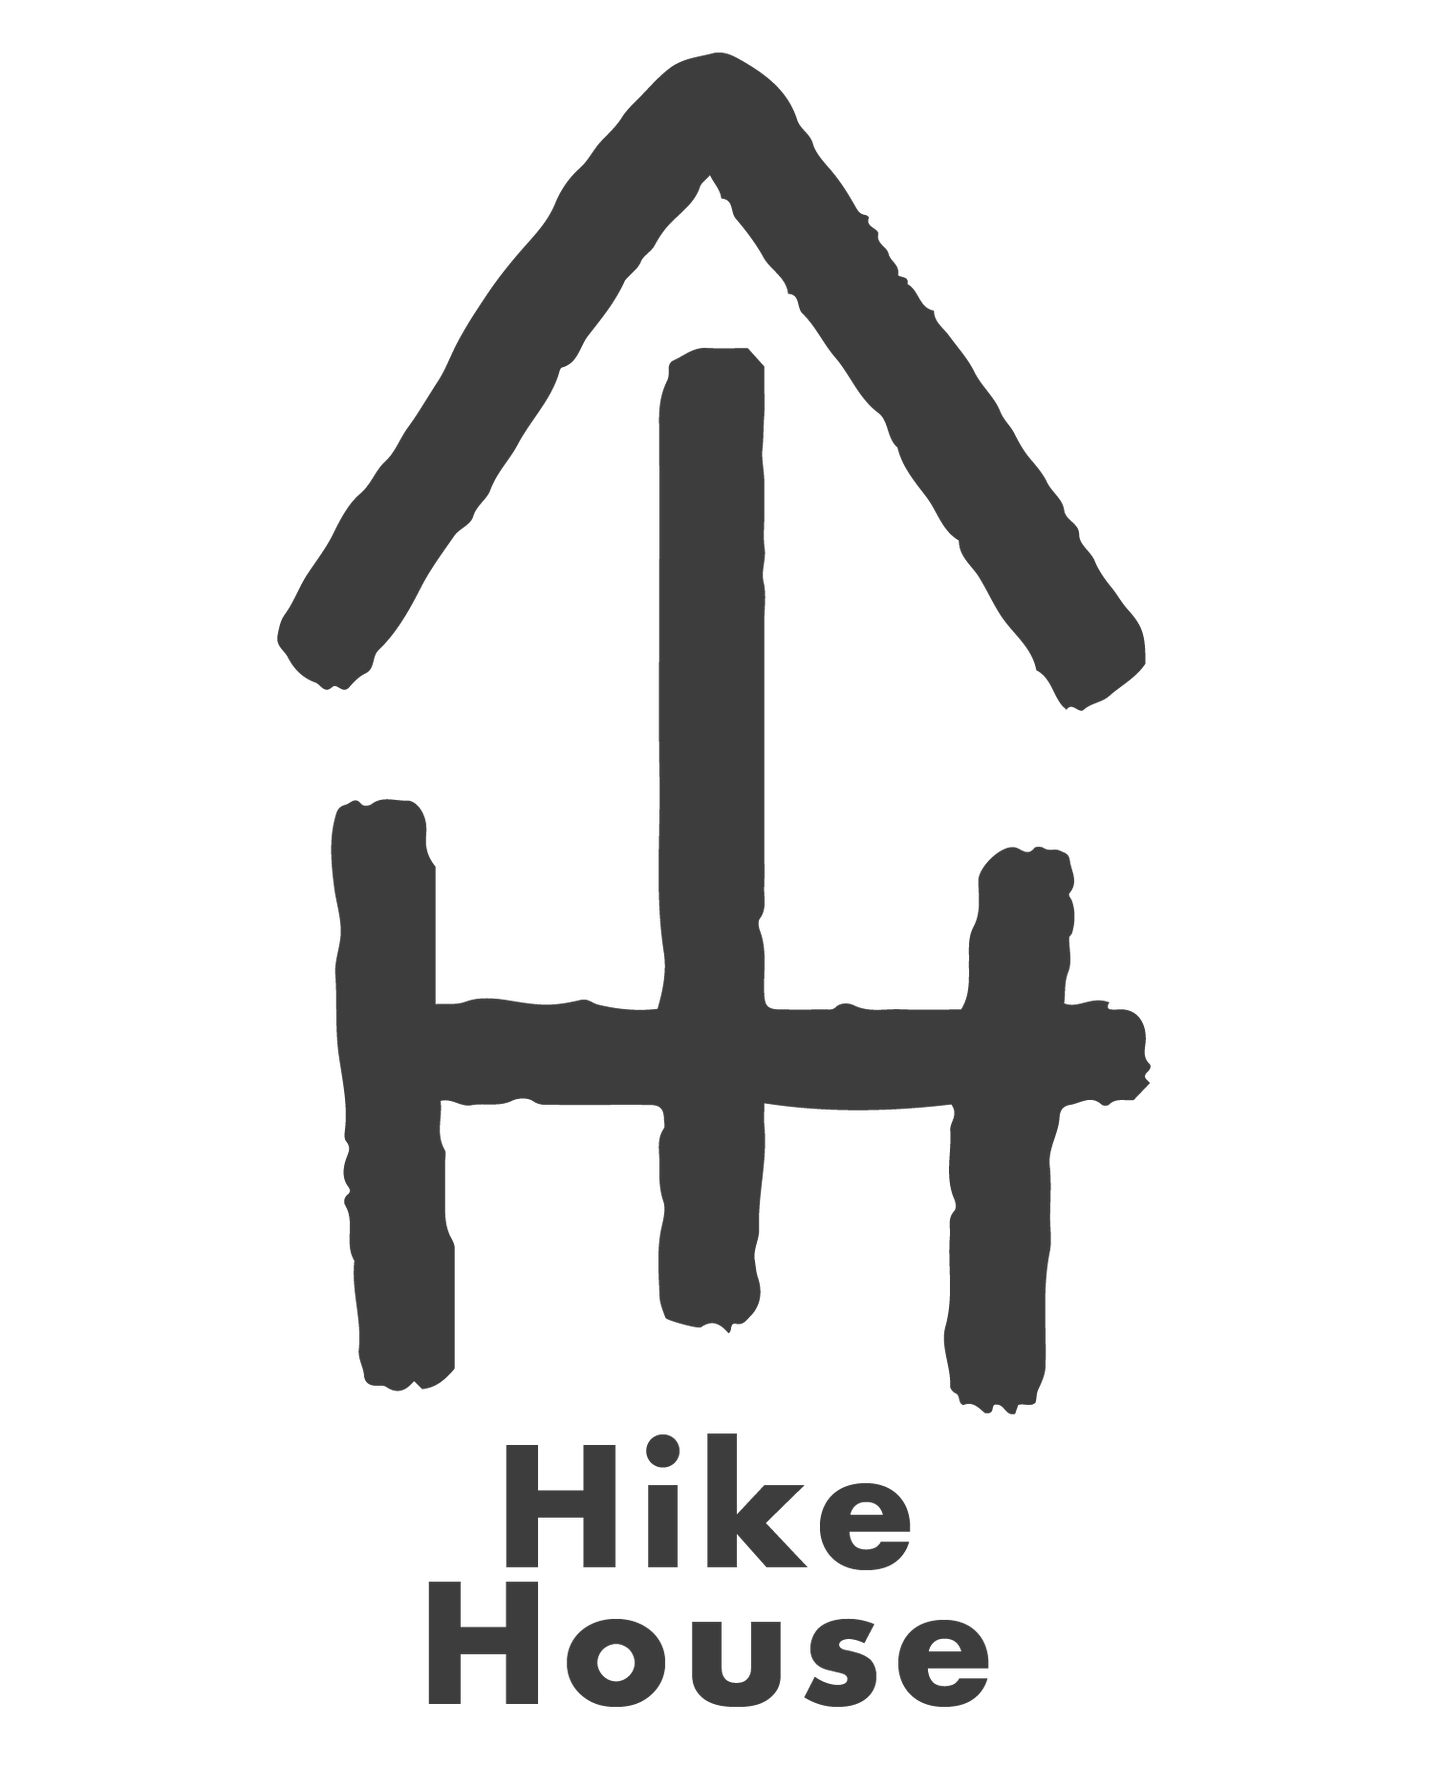 Hike House Sticker